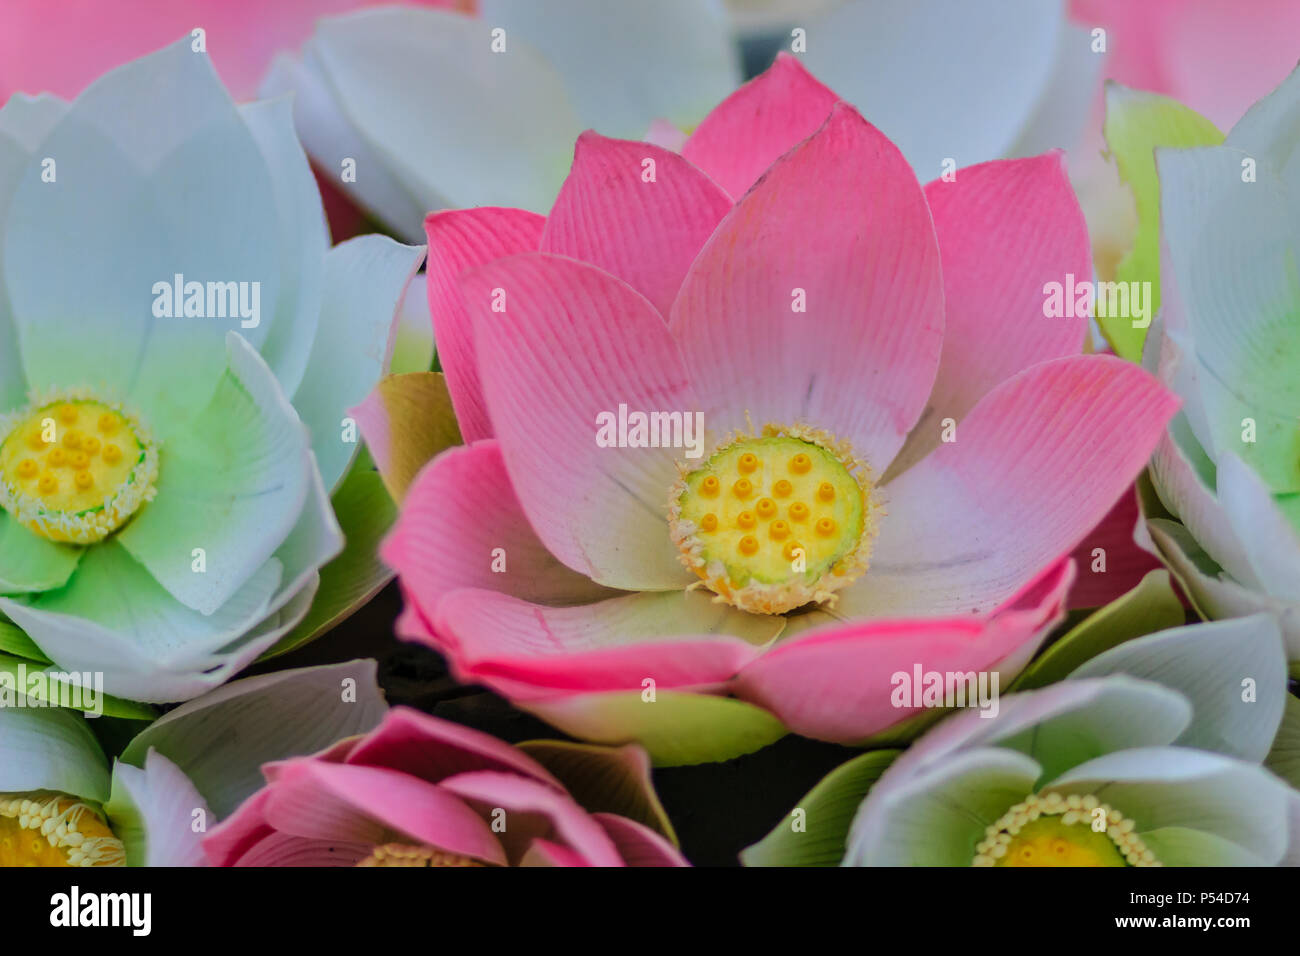 Cute künstliche Pink Lotus Blumen oder Seerose. Künstliche Lotus Blume,  handgeschöpftem Papier Lotus Blume mit rosa und gelben Blatt Blütenblatt,  DIY-kunst Produk Stockfotografie - Alamy